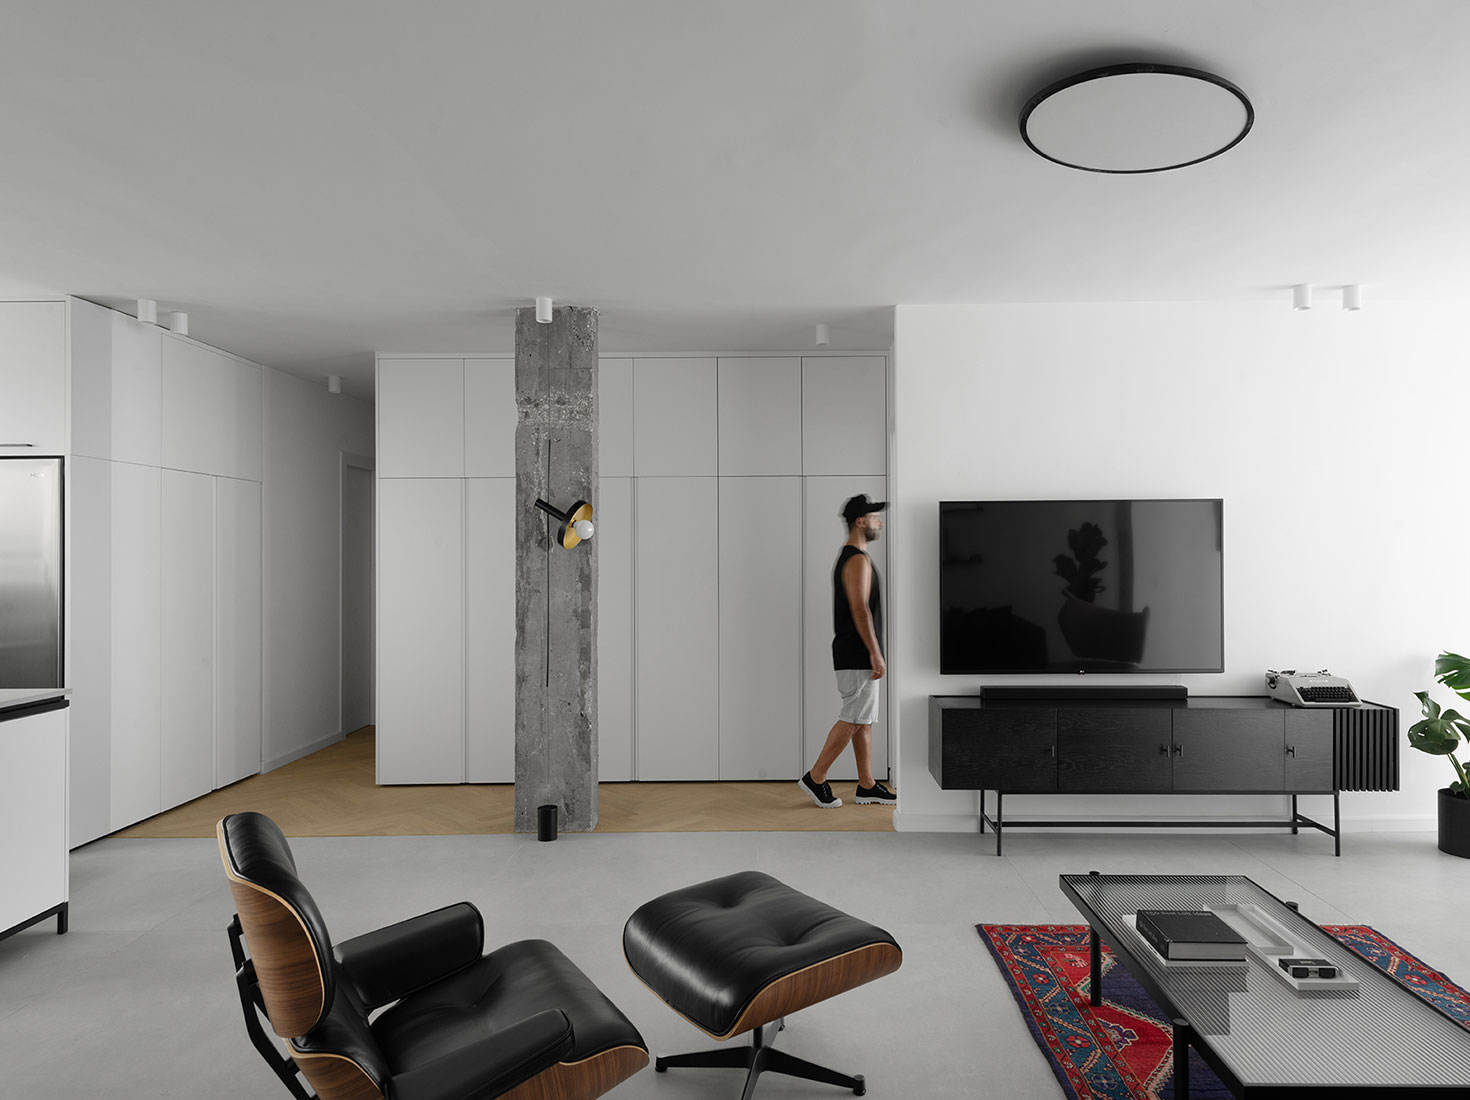 Studio ETN,130㎡,以色列,公寓设计案例,白色+原木色,北欧风格,国外公寓设计,公寓设计方案